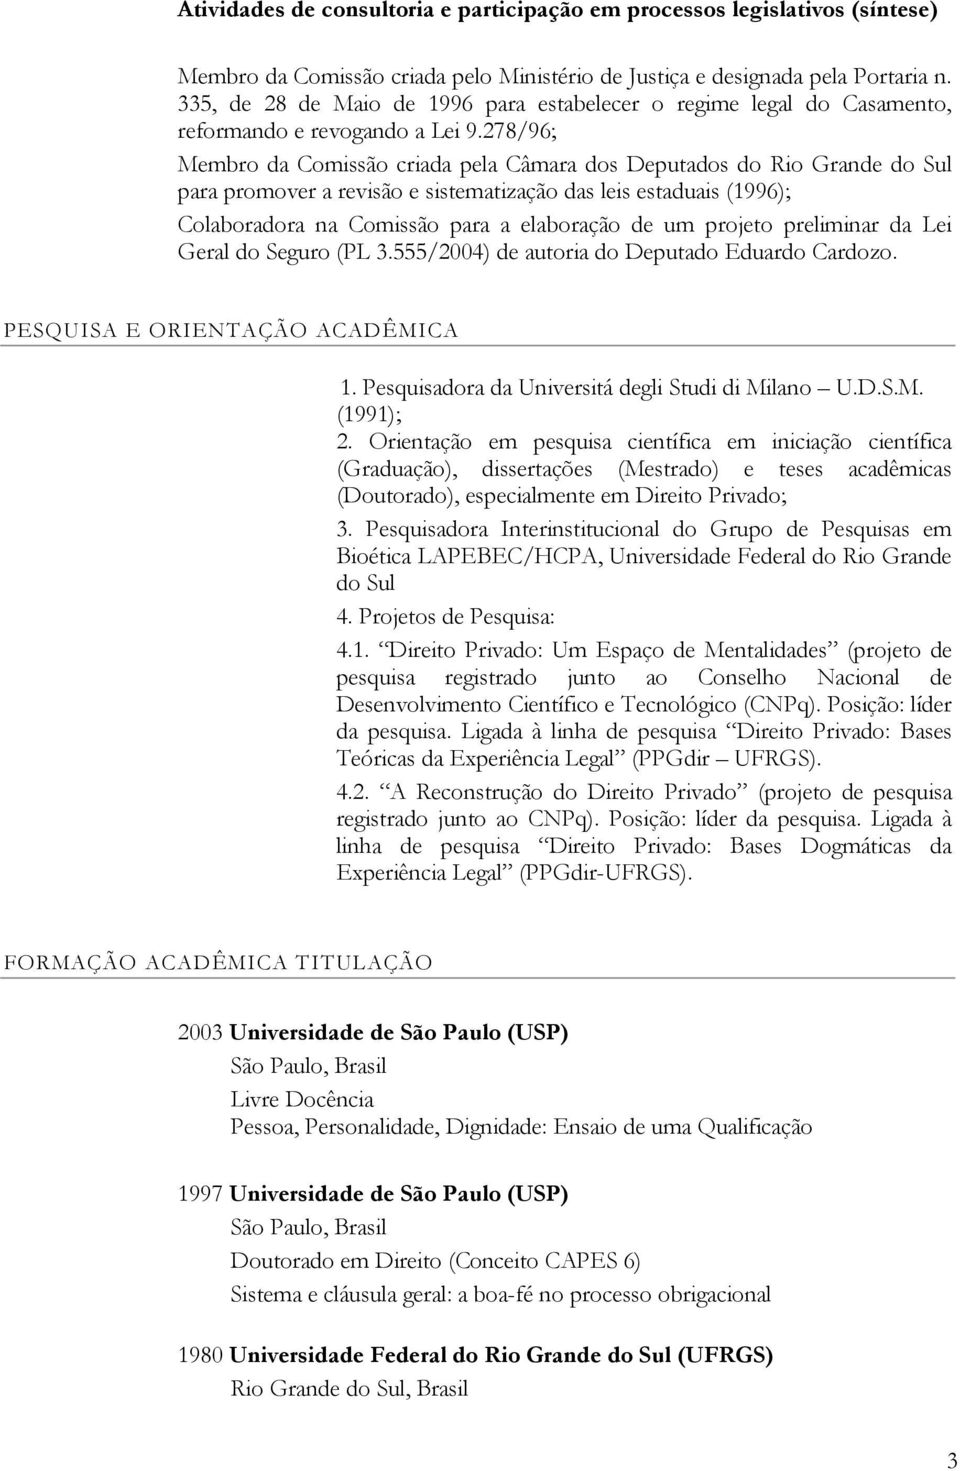 278/96; Membro da Comissão criada pela Câmara dos Deputados do Rio Grande do Sul para promover a revisão e sistematização das leis estaduais (1996); Colaboradora na Comissão para a elaboração de um